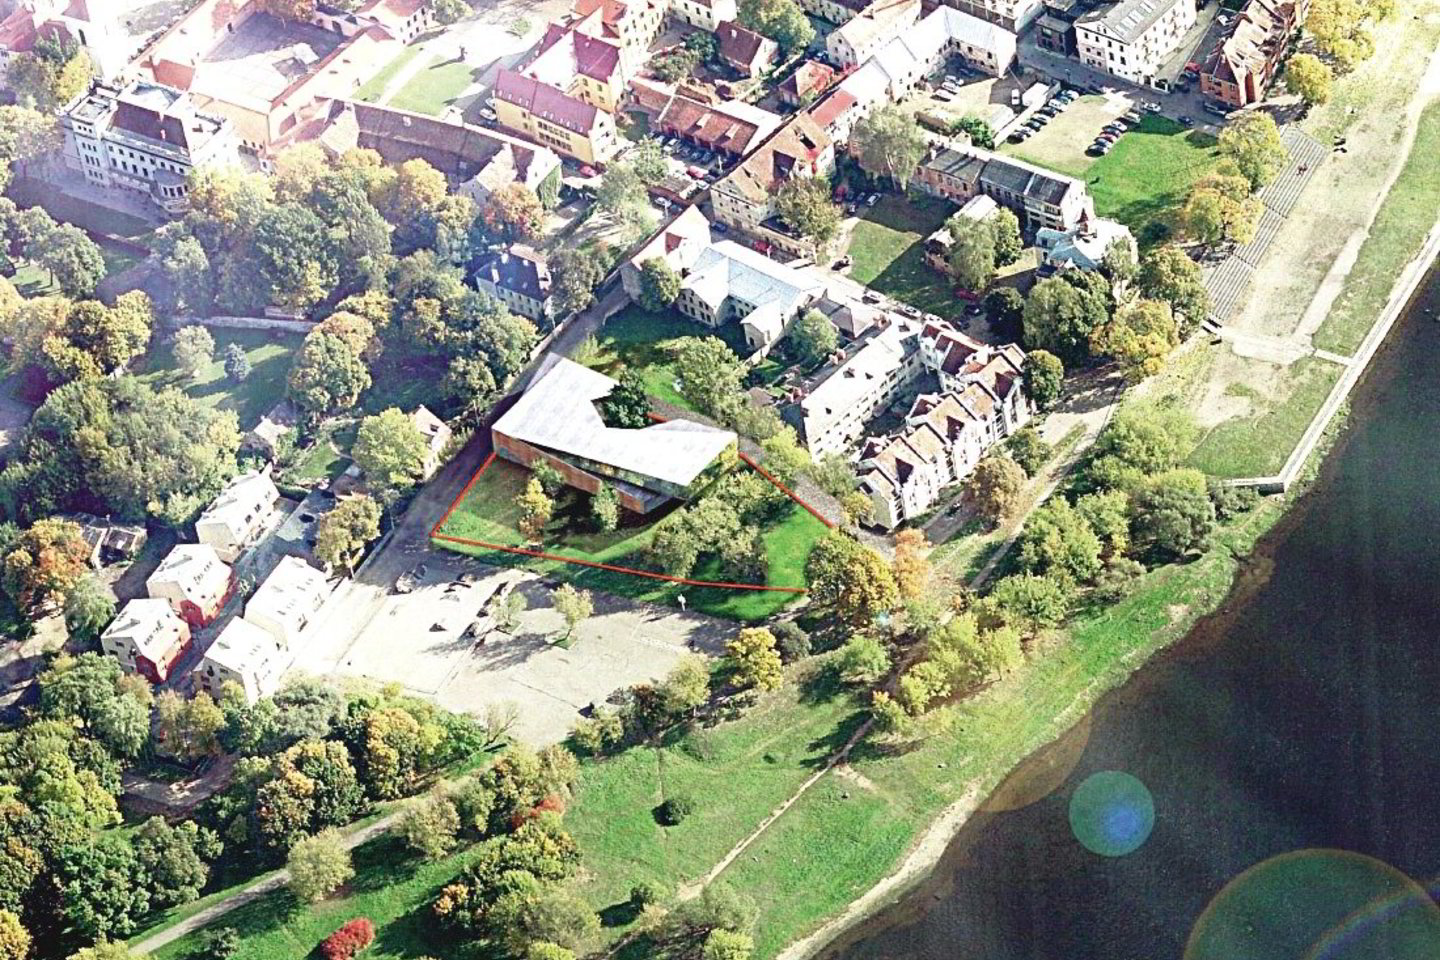 Architekto G.Natkevičiaus parengtam projektui plėtoti LKF gavo 30  arų sklypą Kauno senamiestyje netoli upės.